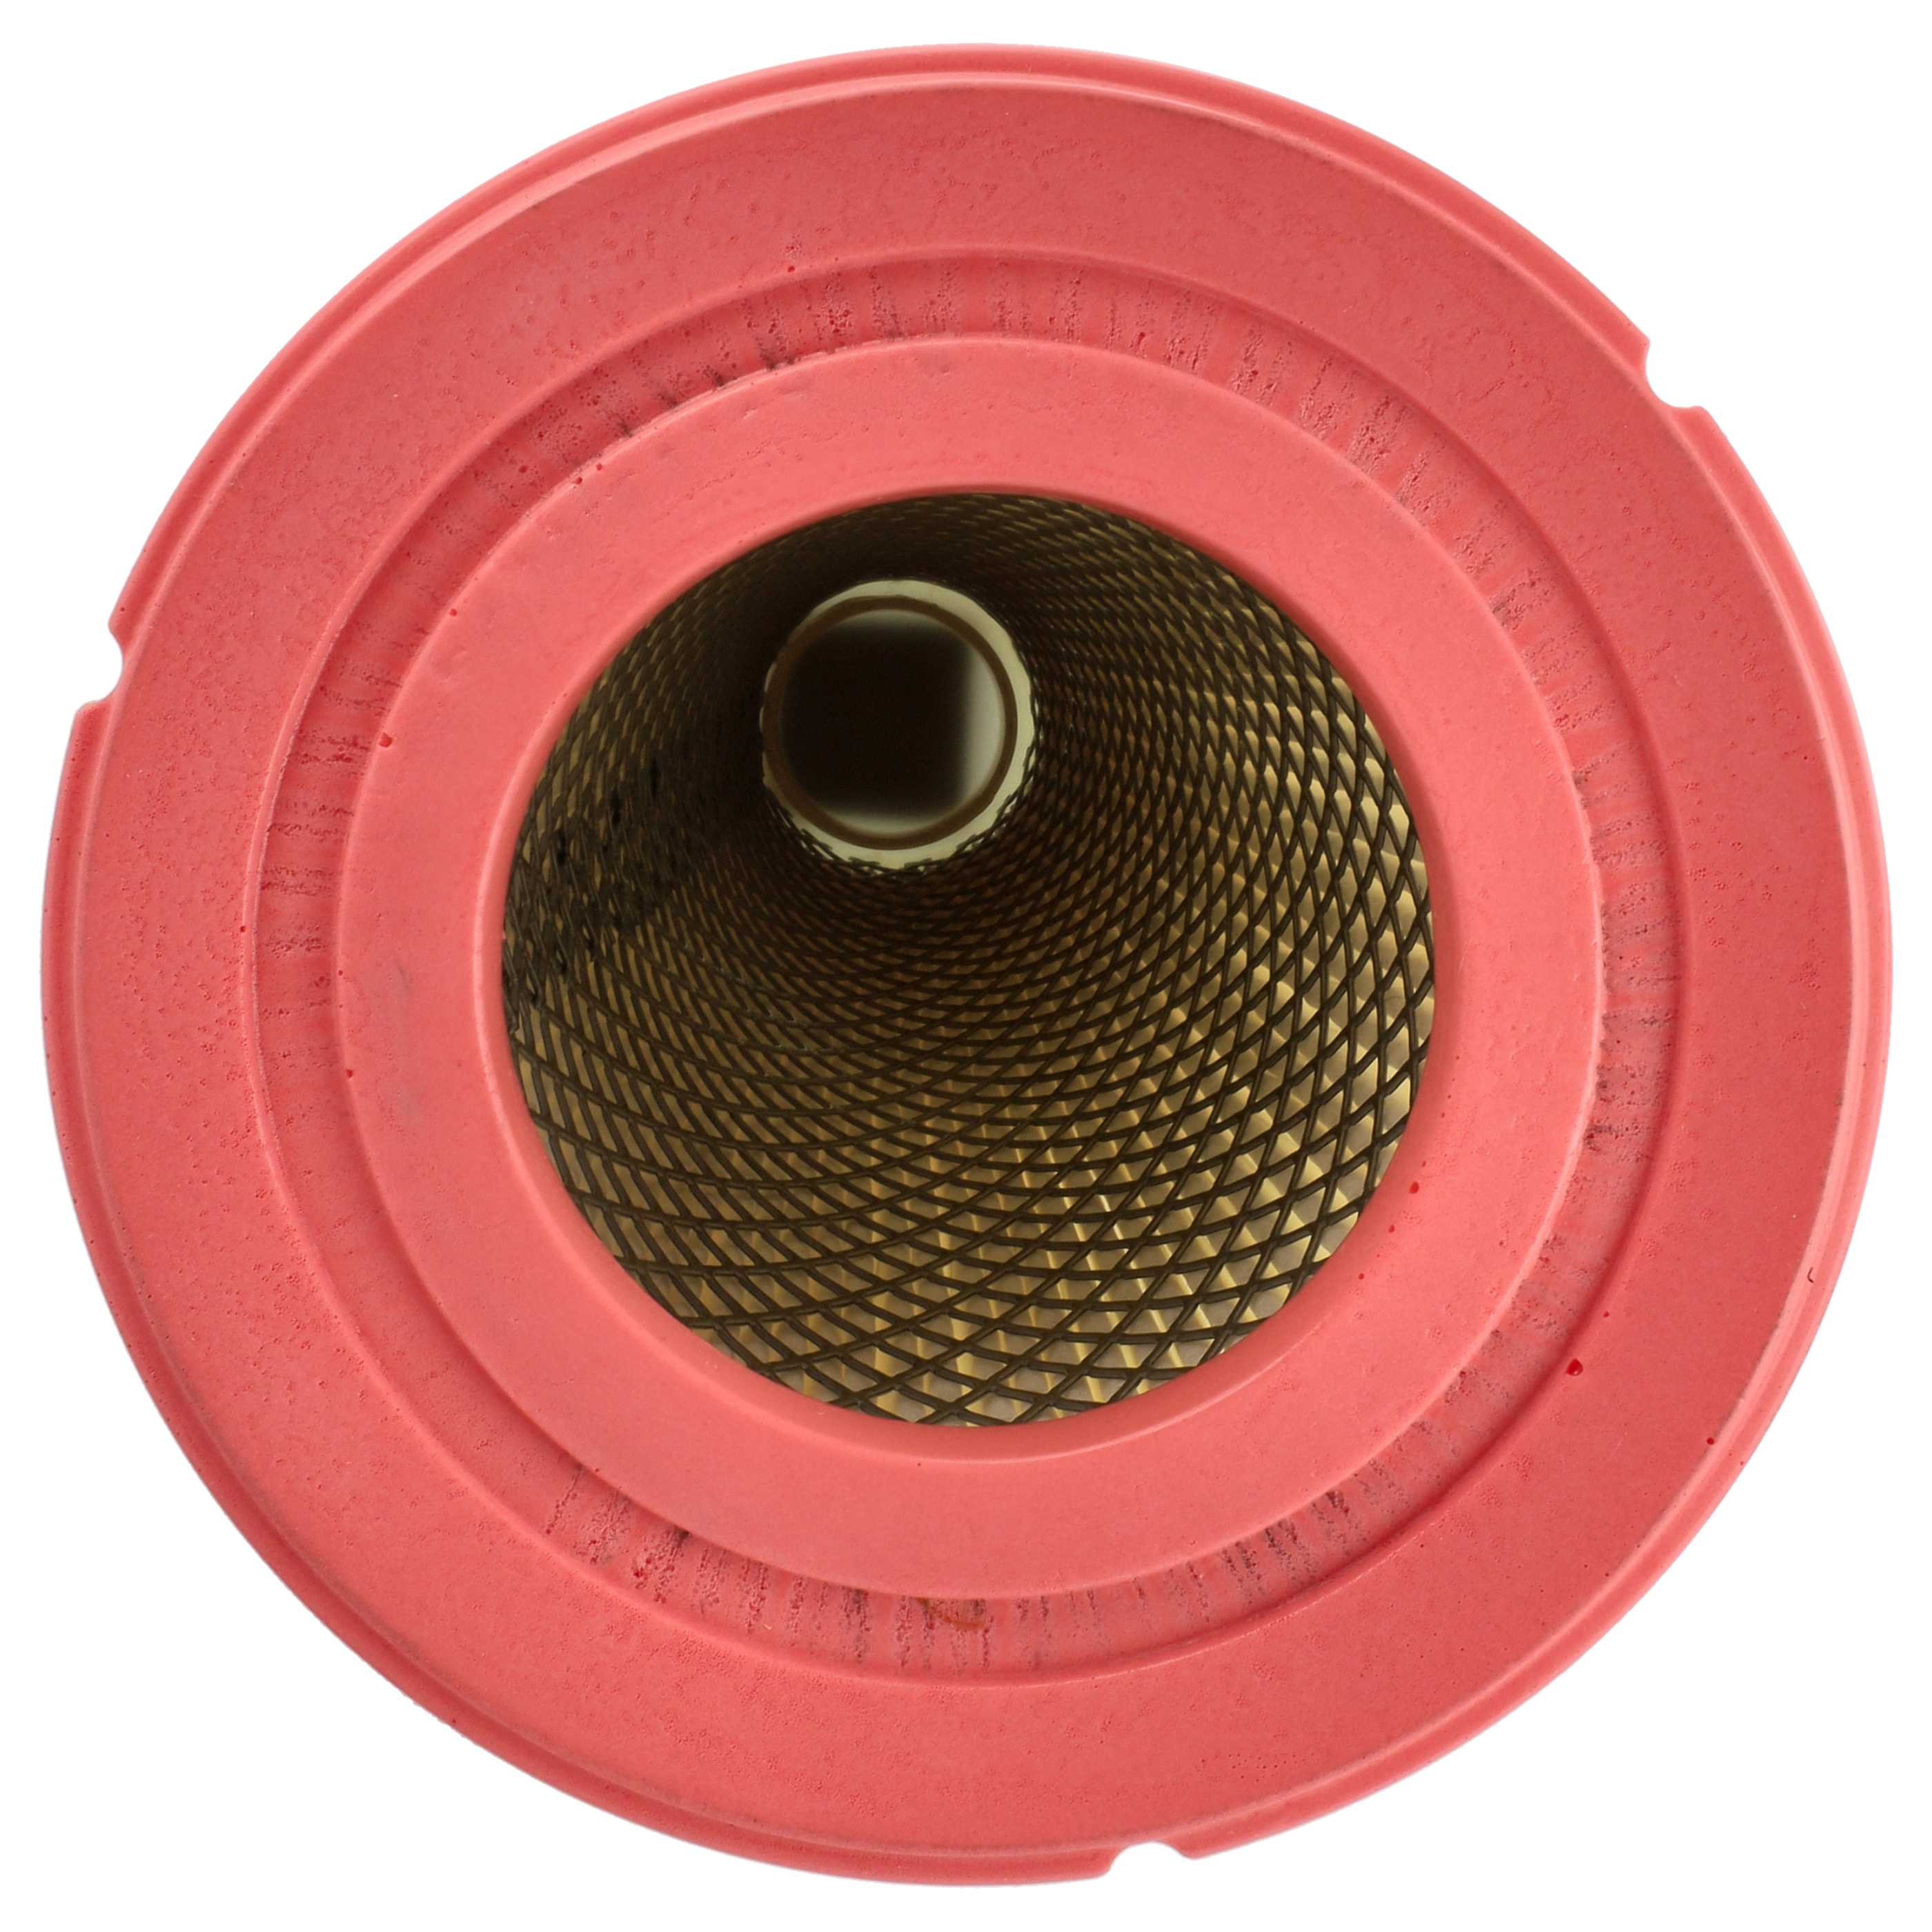 Filtre remplace Dustcontrol 42027 pour aspirateur - filtre HEPA HEPA 13